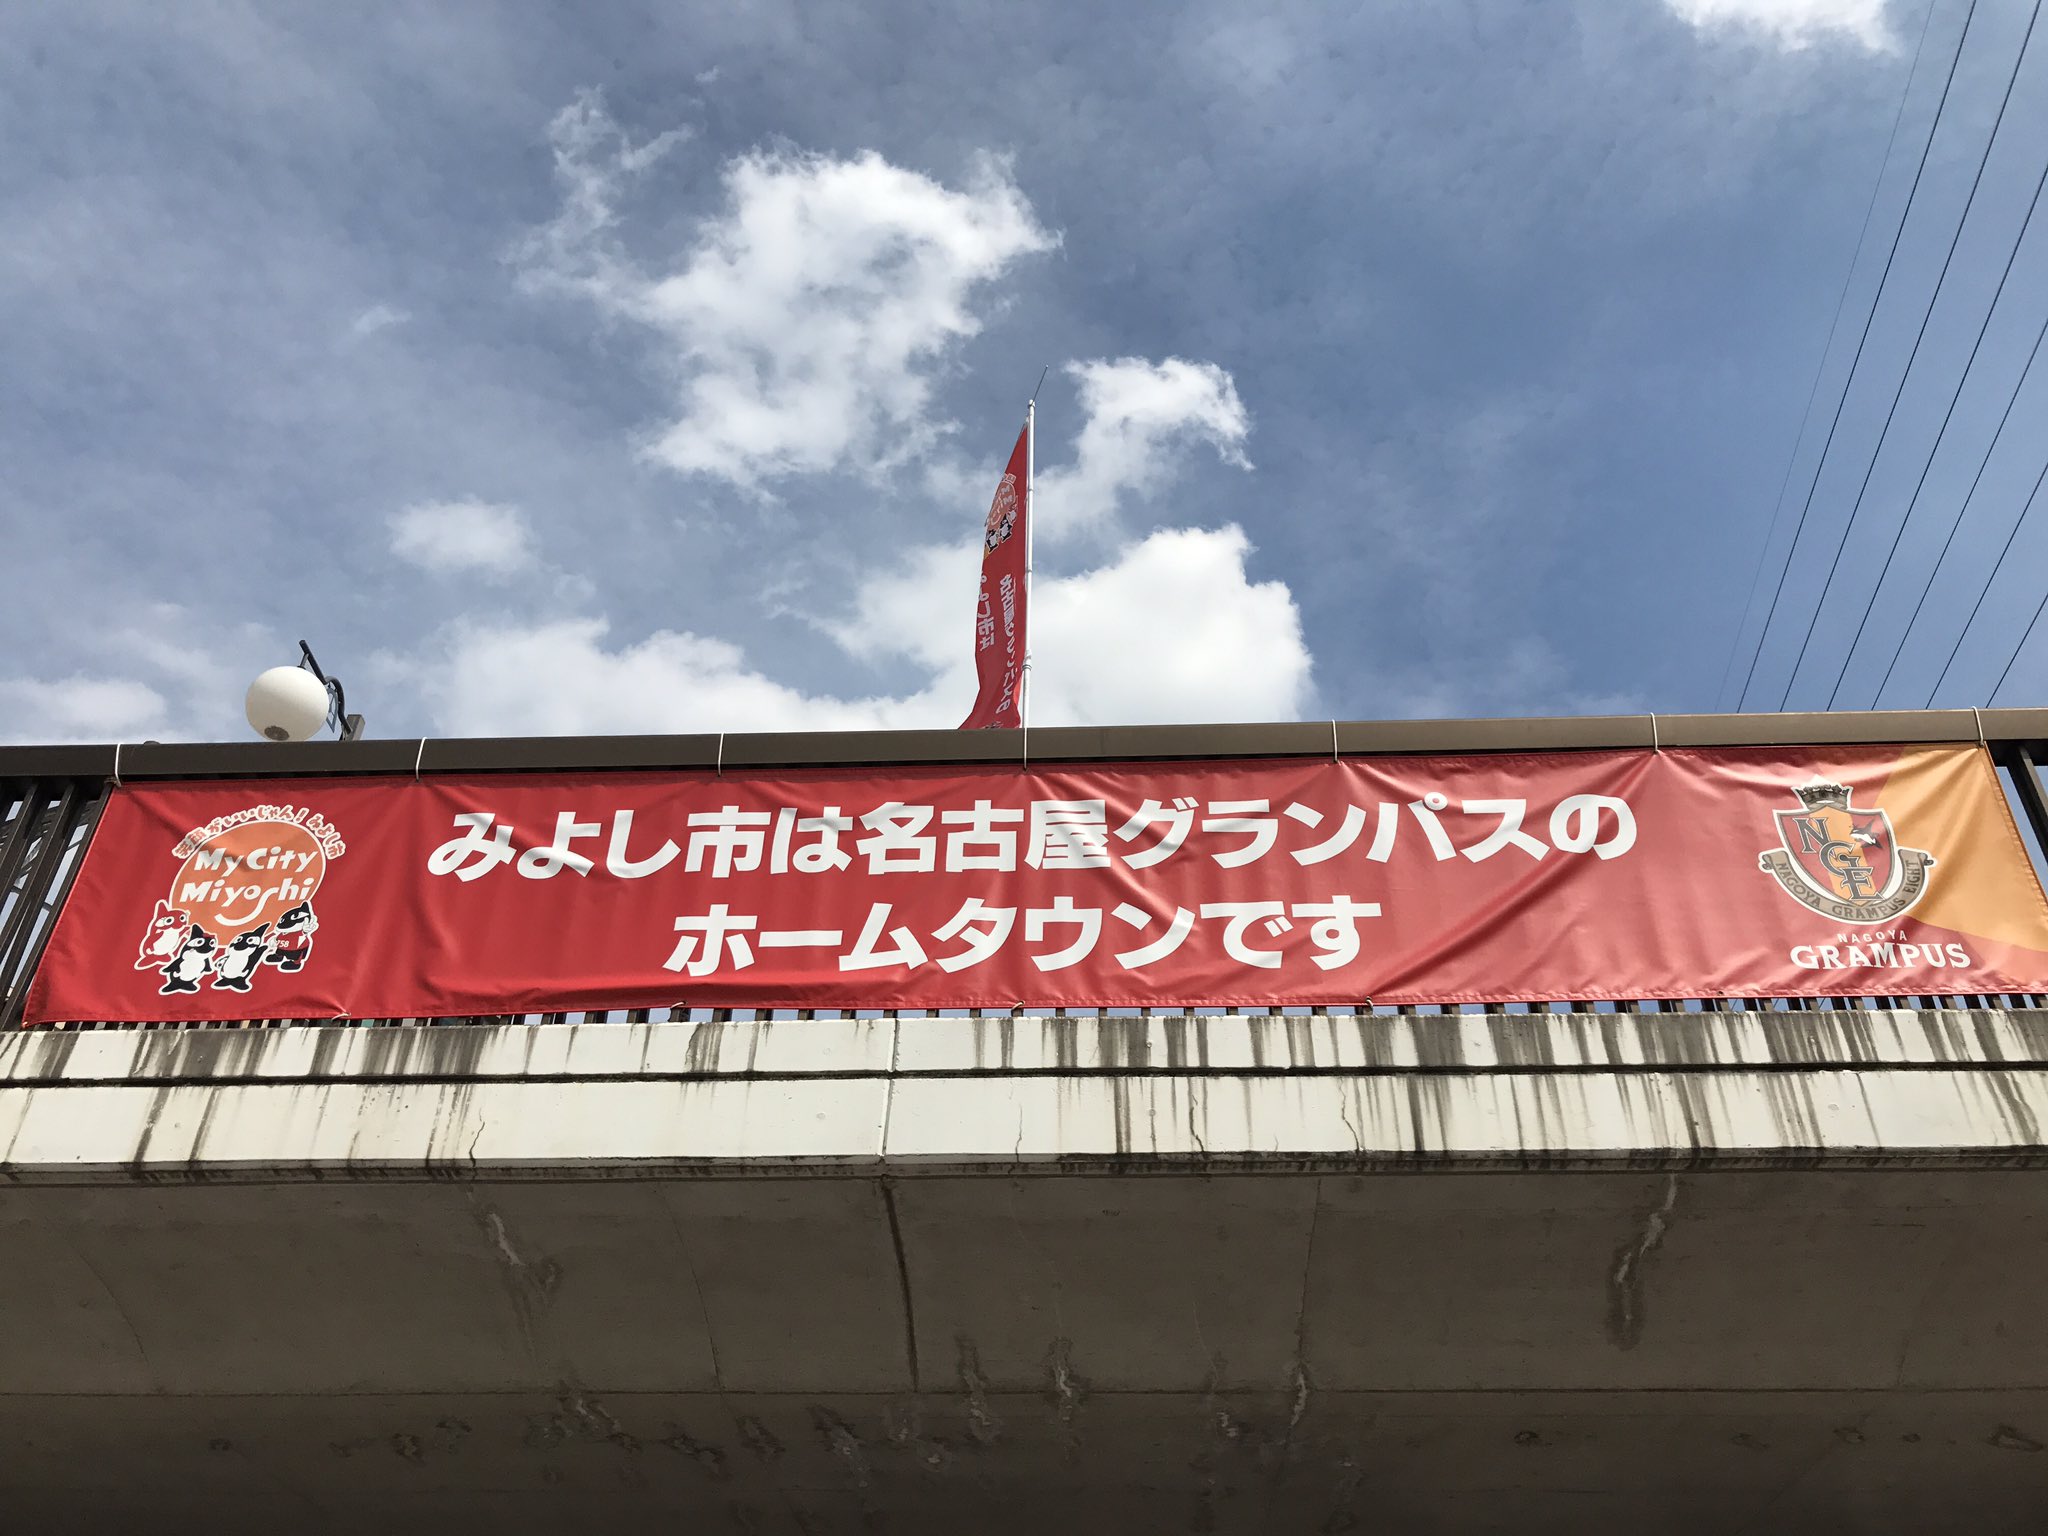 名古屋グランパス Nagoya Grampus Grampus のホームタウンである みよし市 のご協力によりトヨタスポーツセンターの最寄り駅 名鉄三好ヶ丘駅がグランパスカラーに彩られました トヨタスポーツセンターへお越しの際はぜひ 名鉄三好ヶ丘駅 をご利用